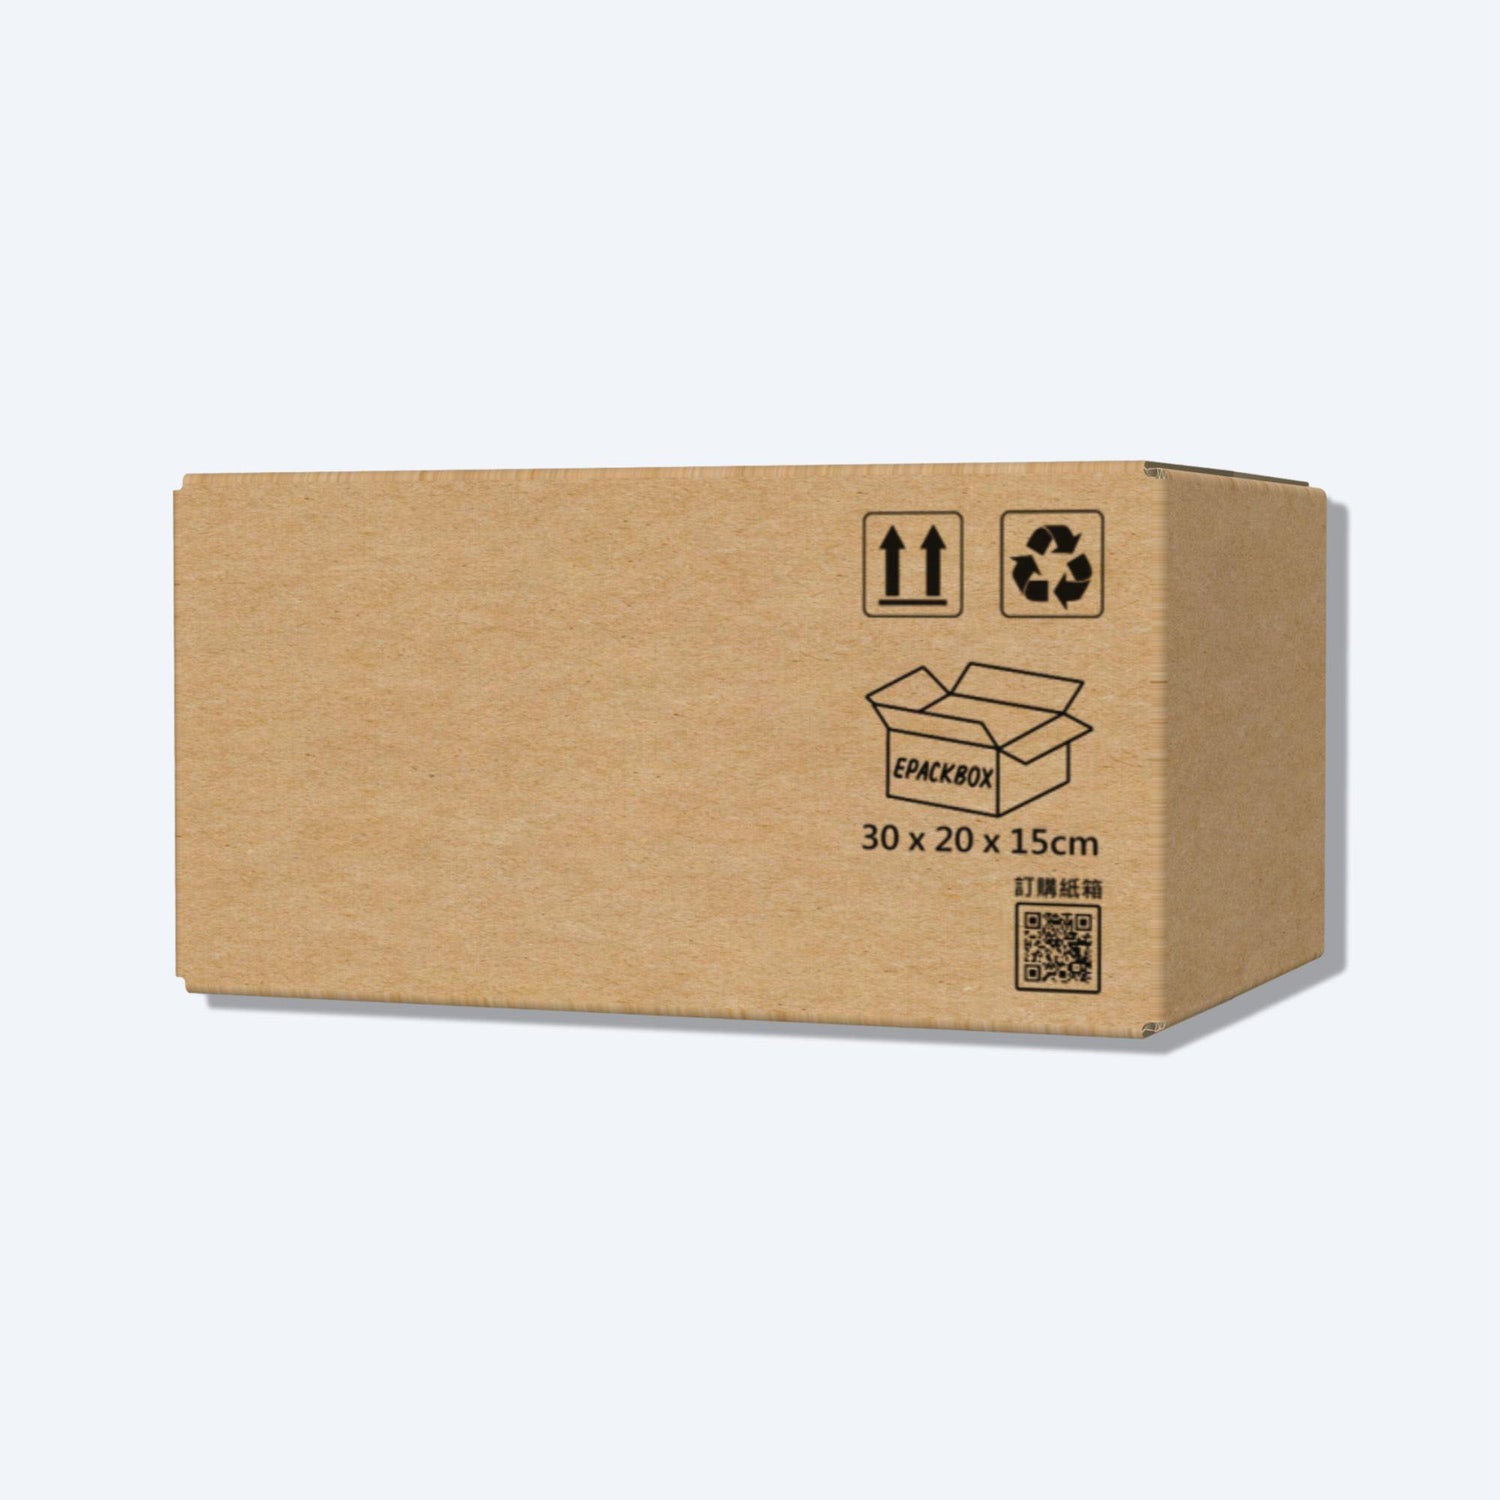 順豐F2尺寸紙箱展開圖，其尺寸符合順豐速運的包裝標準，展示折疊和組裝方式。